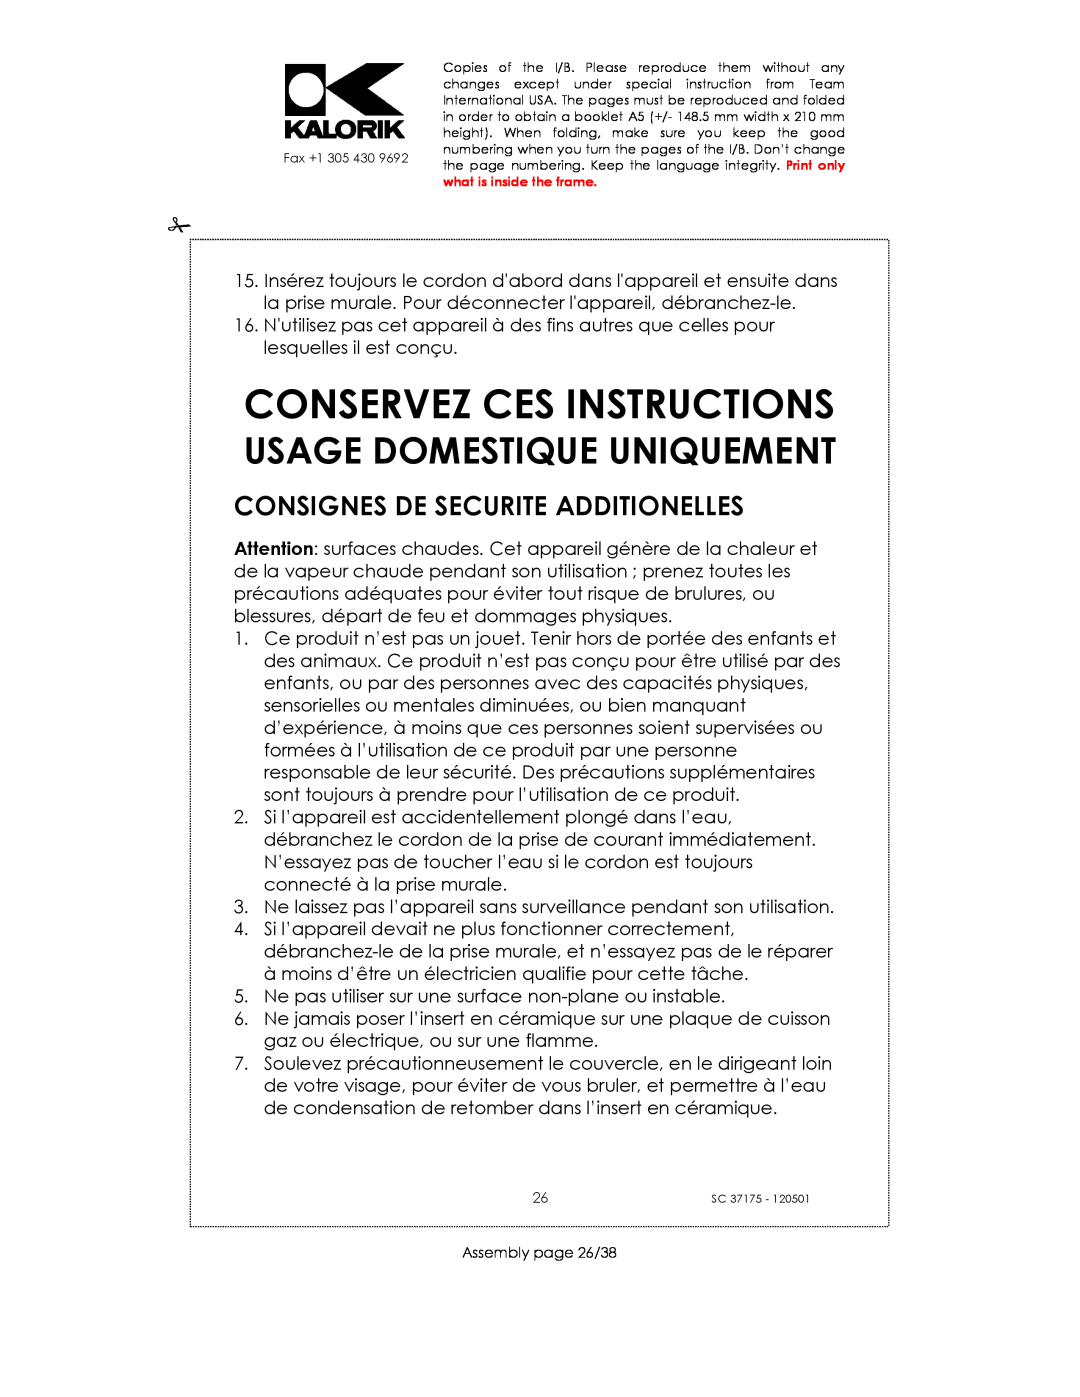 Kalorik SC 37175 manual Conservez Ces Instructions, Usage Domestique Uniquement, Consignes De Securite Additionelles 